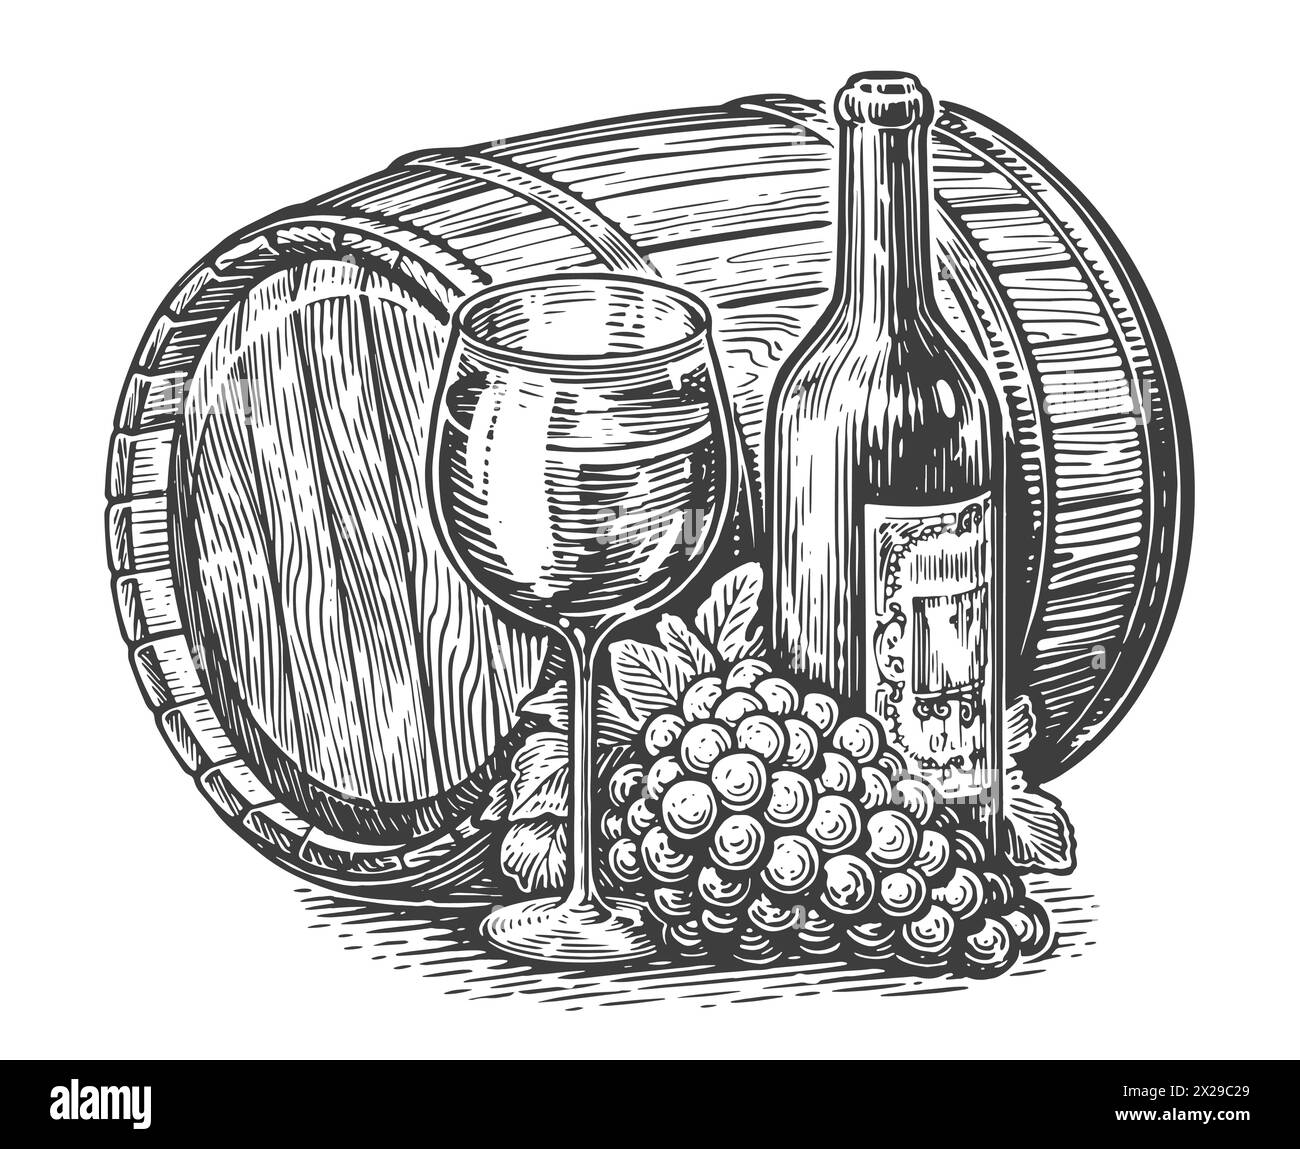 Bouteille de vin, verre de vin et tonneau en bois. Style de gravure d'illustration vectorielle d'esquisse vintage Illustration de Vecteur